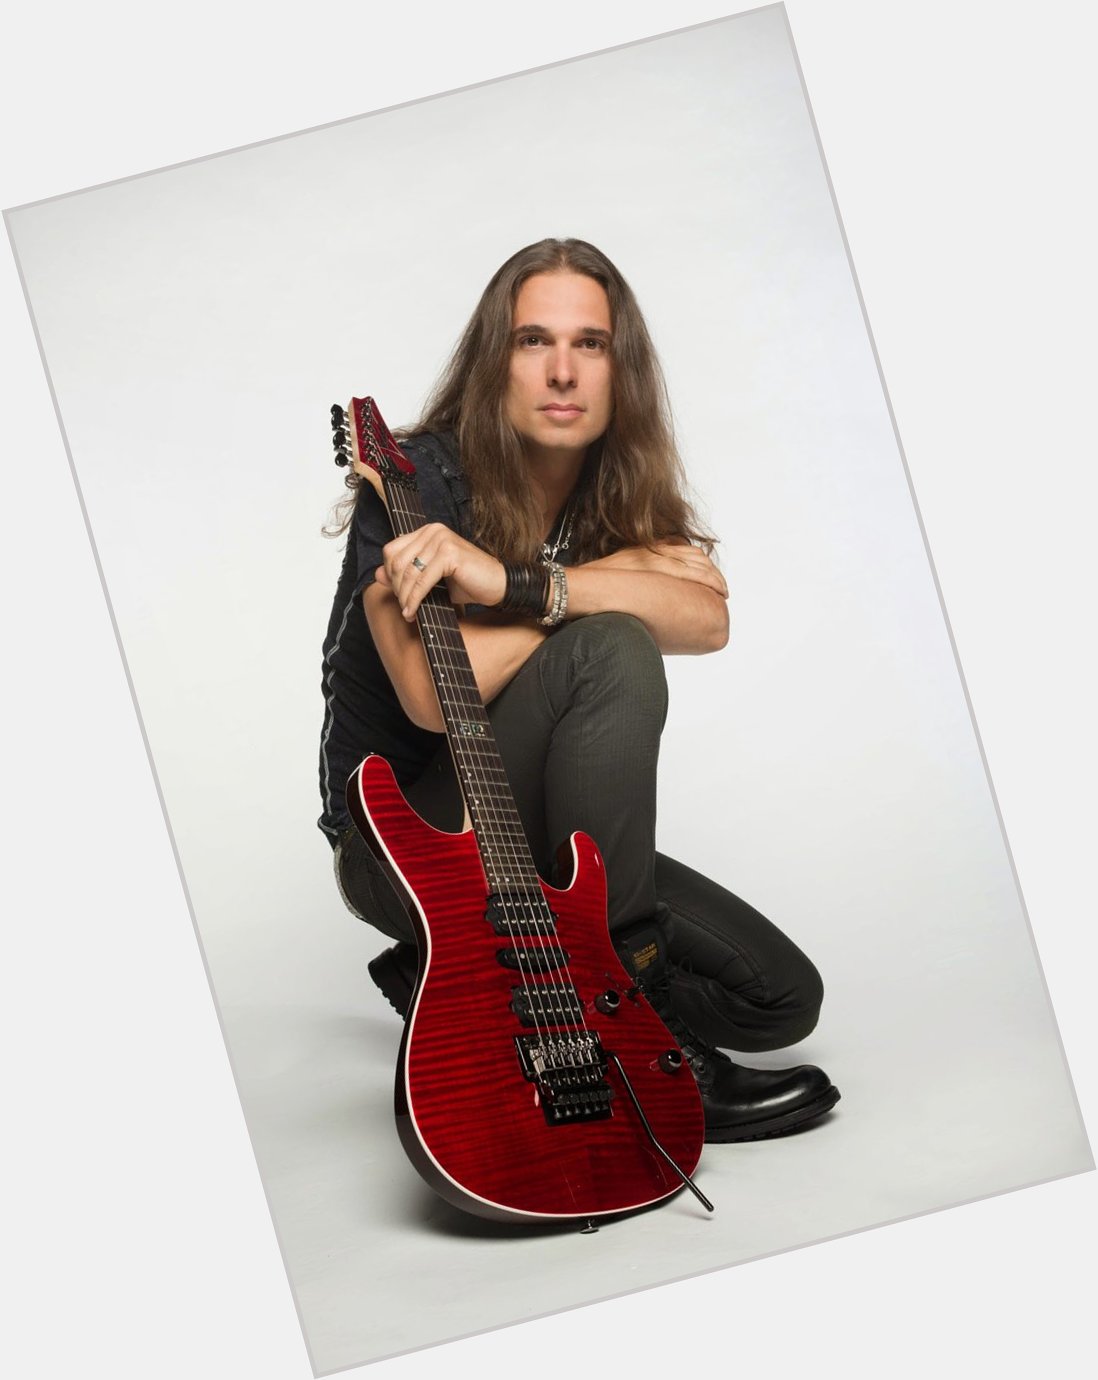 Happy birthday to Kiko Loureiro! The Brazilian guitarist from Megadeth (Ex-Angra) celebrates today his 49th birthday 